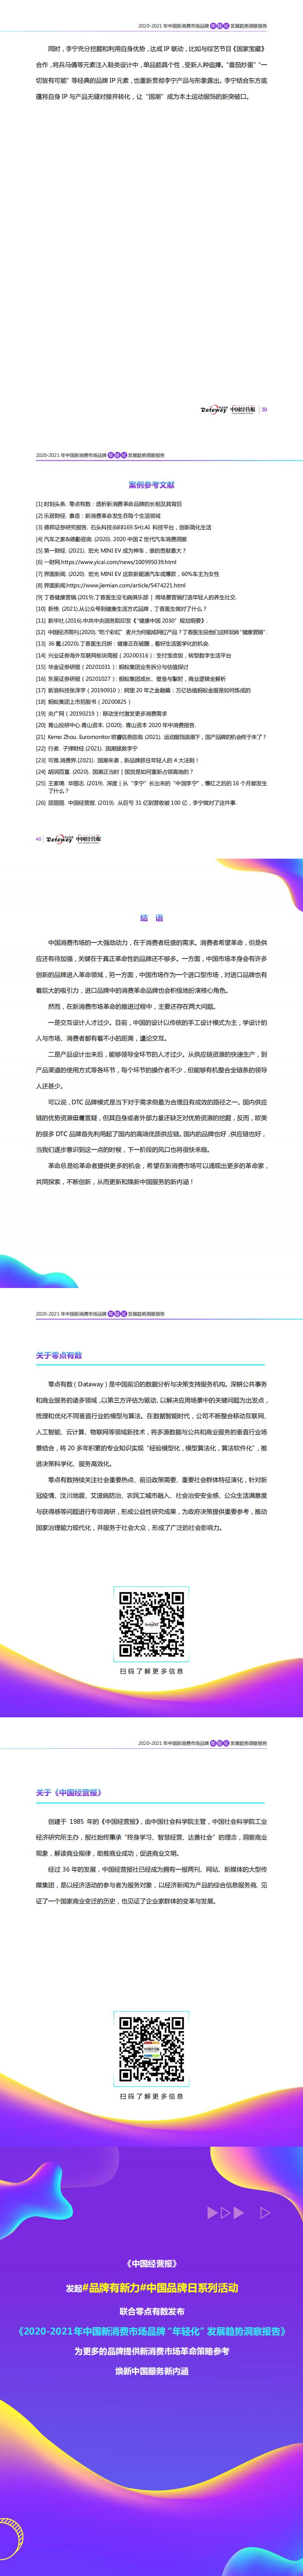 【最终】2020年中国新消费市场品牌“年轻化”发展趋势洞察报告(3)_2.jpg